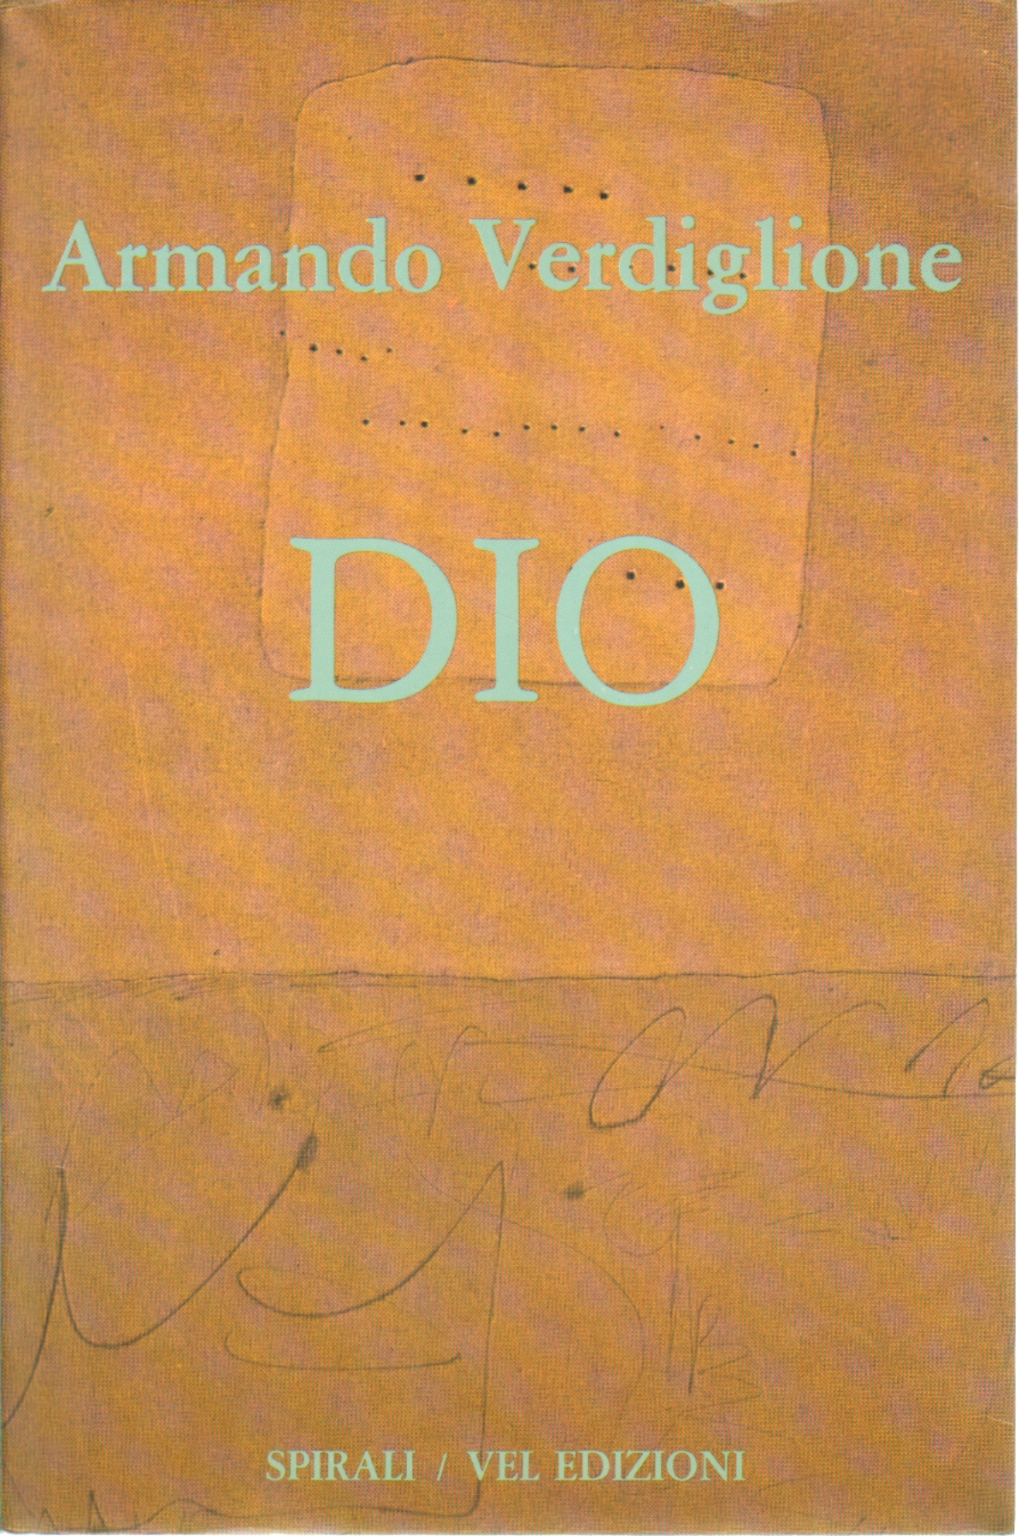 Dios, Armando Verdiglione